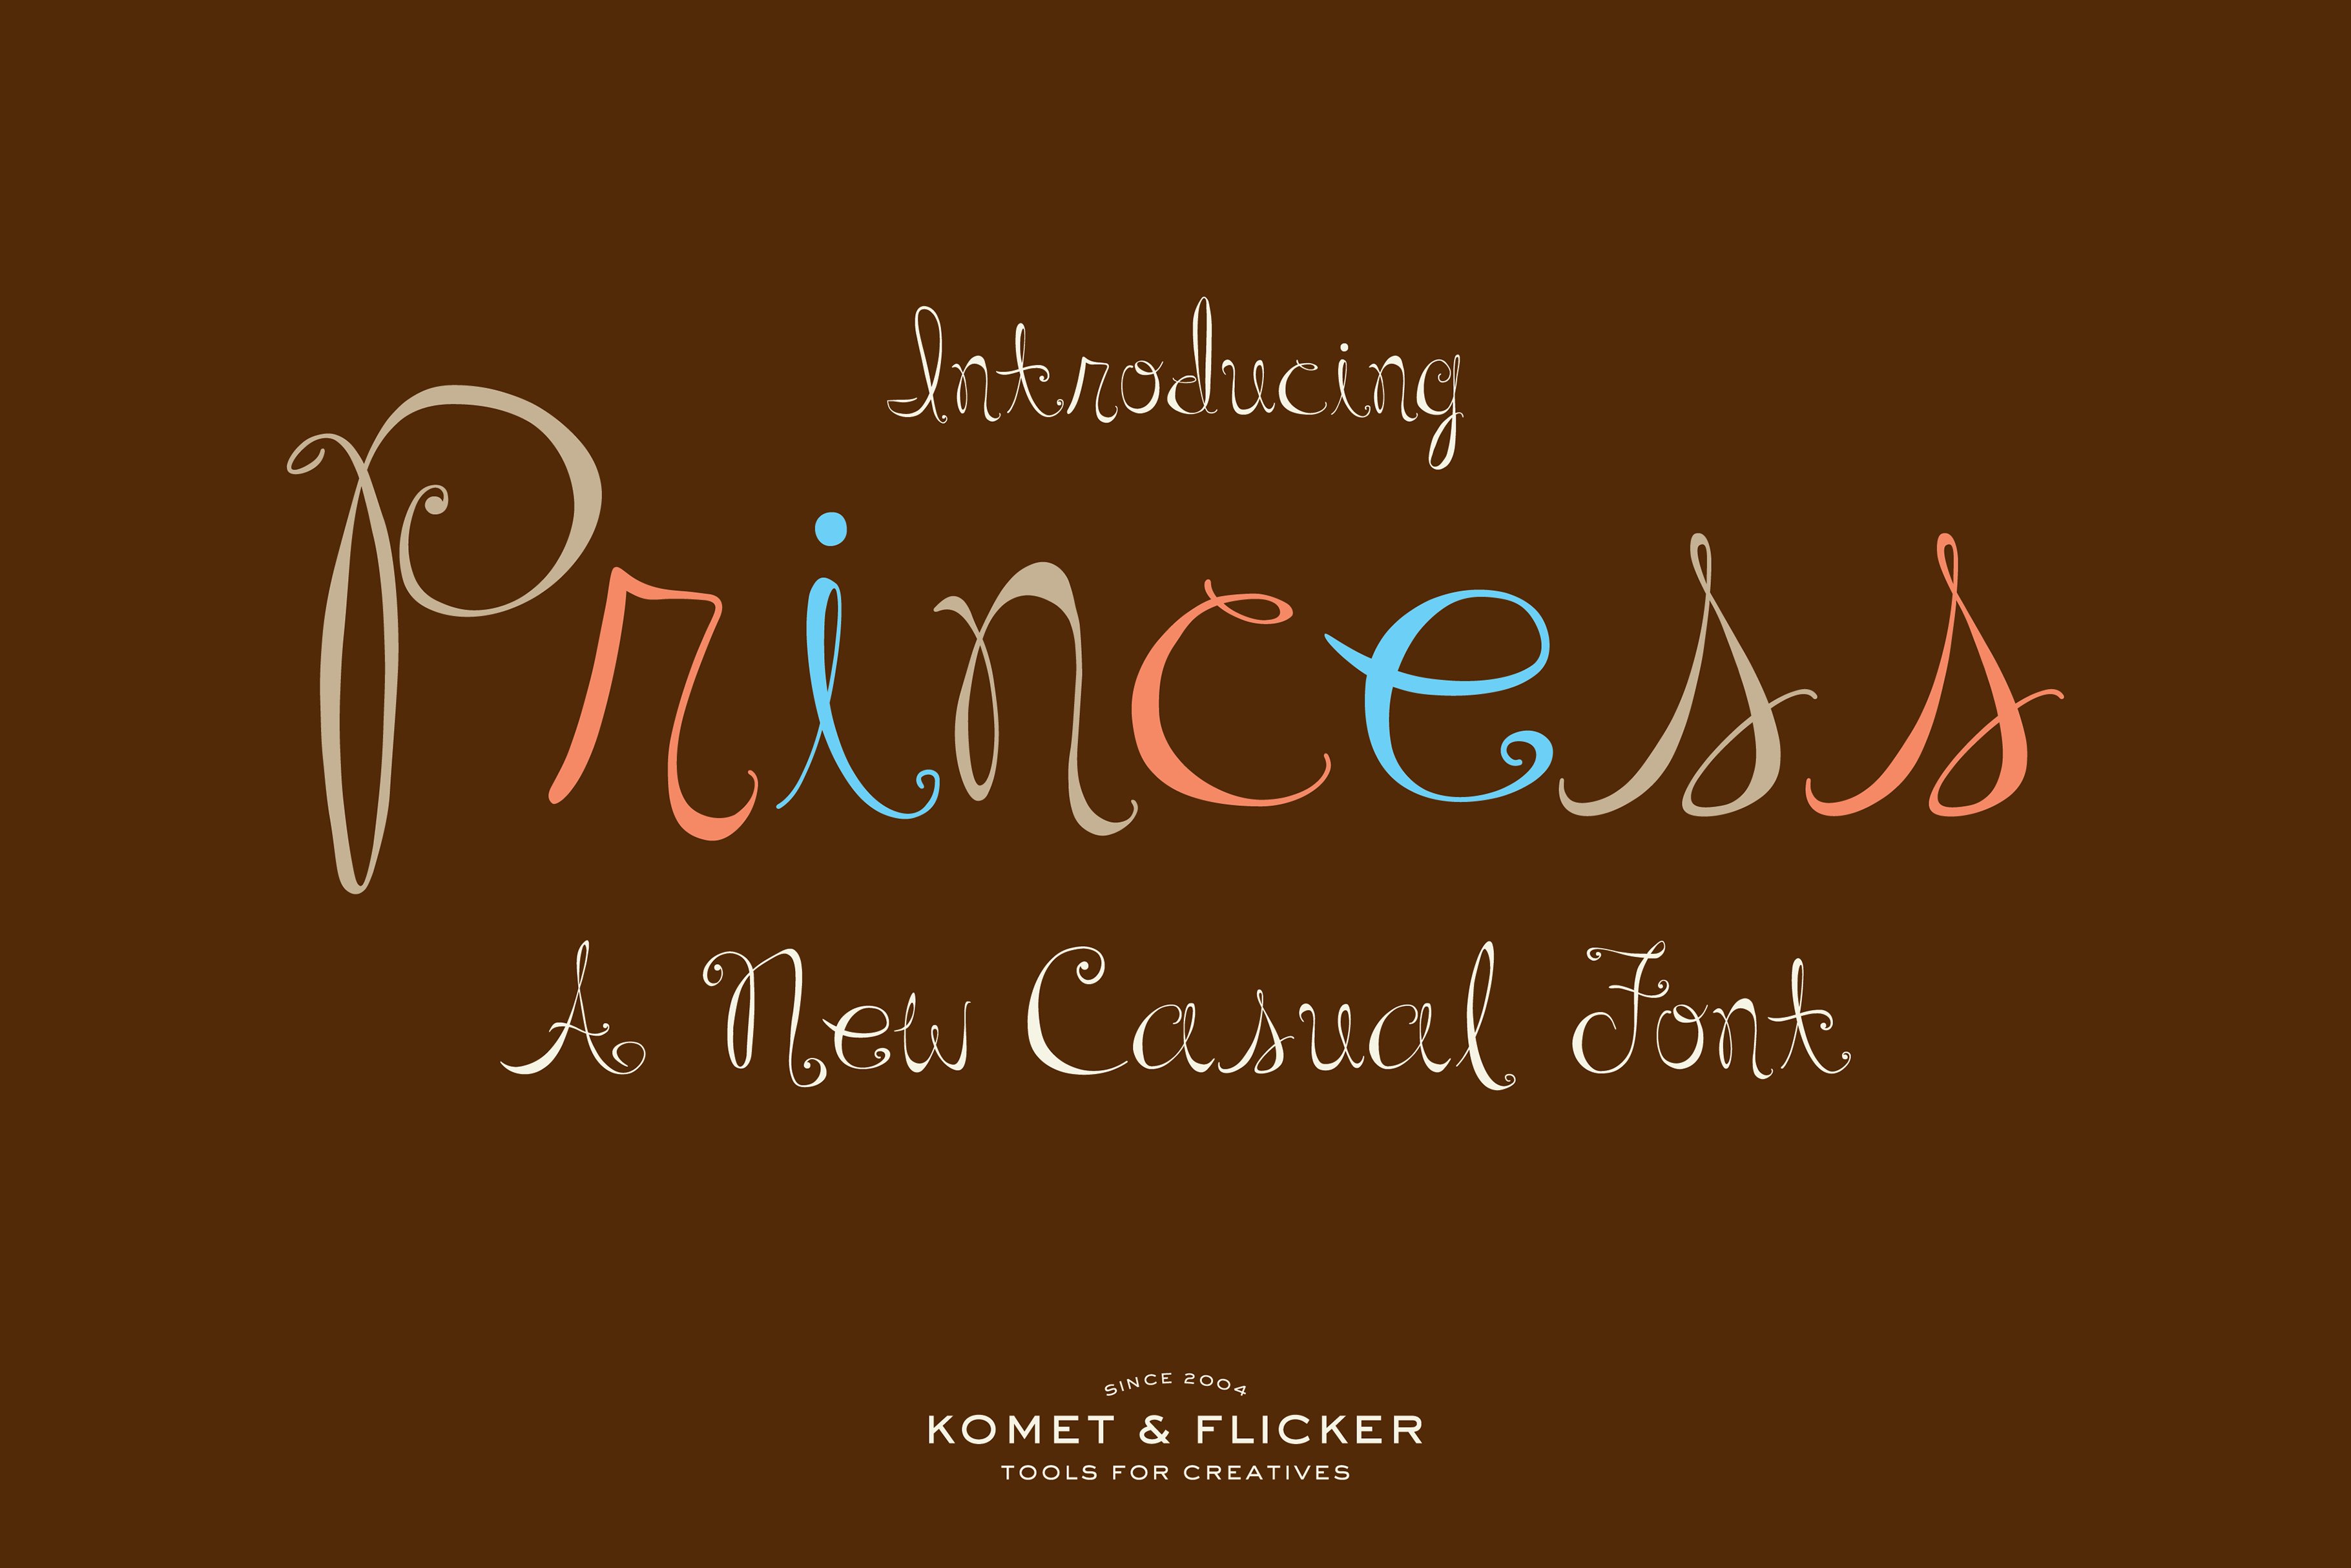 Princess – A Casual Script Font cover image.